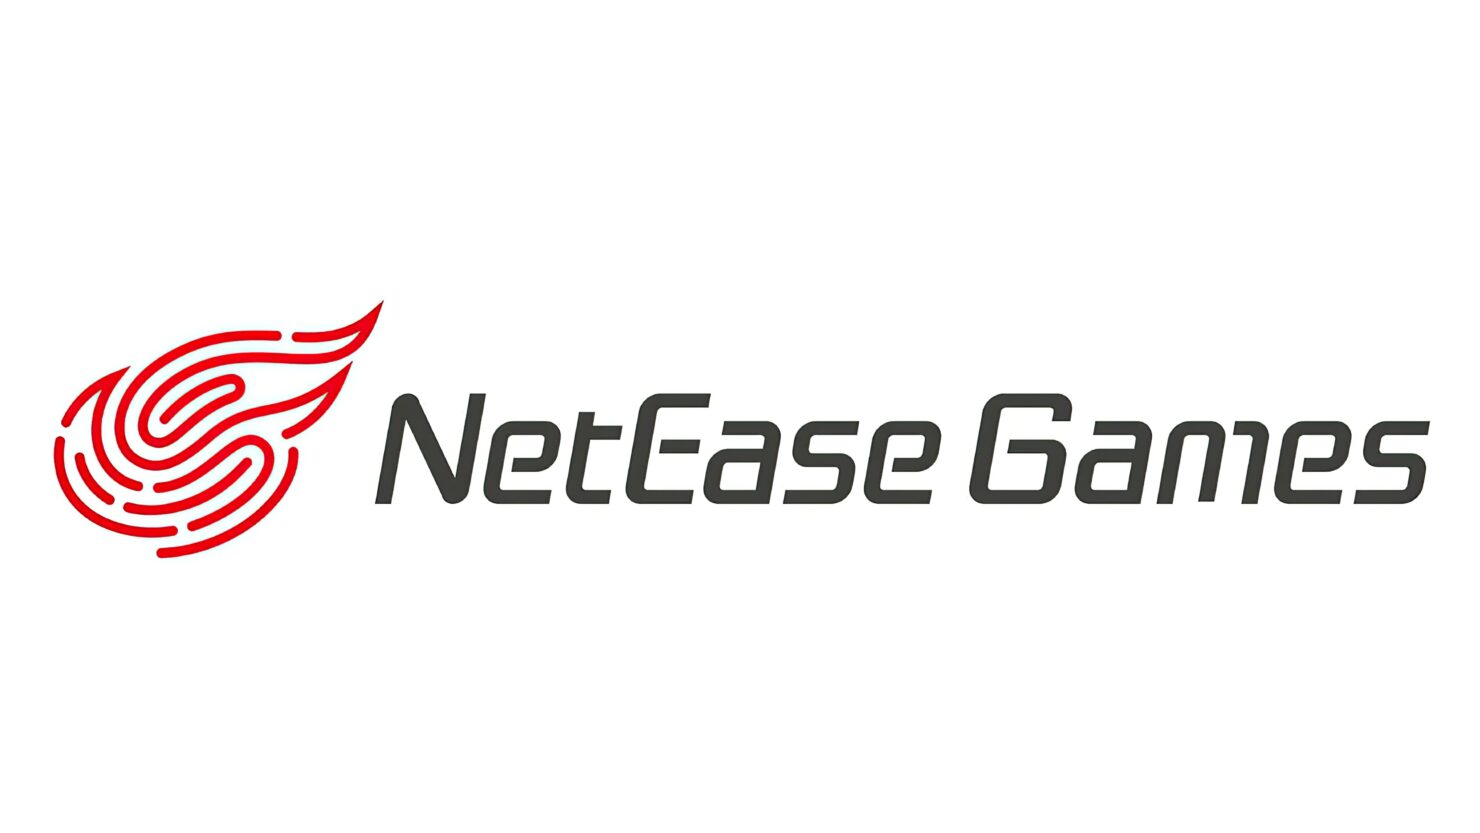 Netease otworzyło swoje pierwsze studio w Stanach Zjednoczonych – będzie tworzyć gry online na komputery PC i konsole